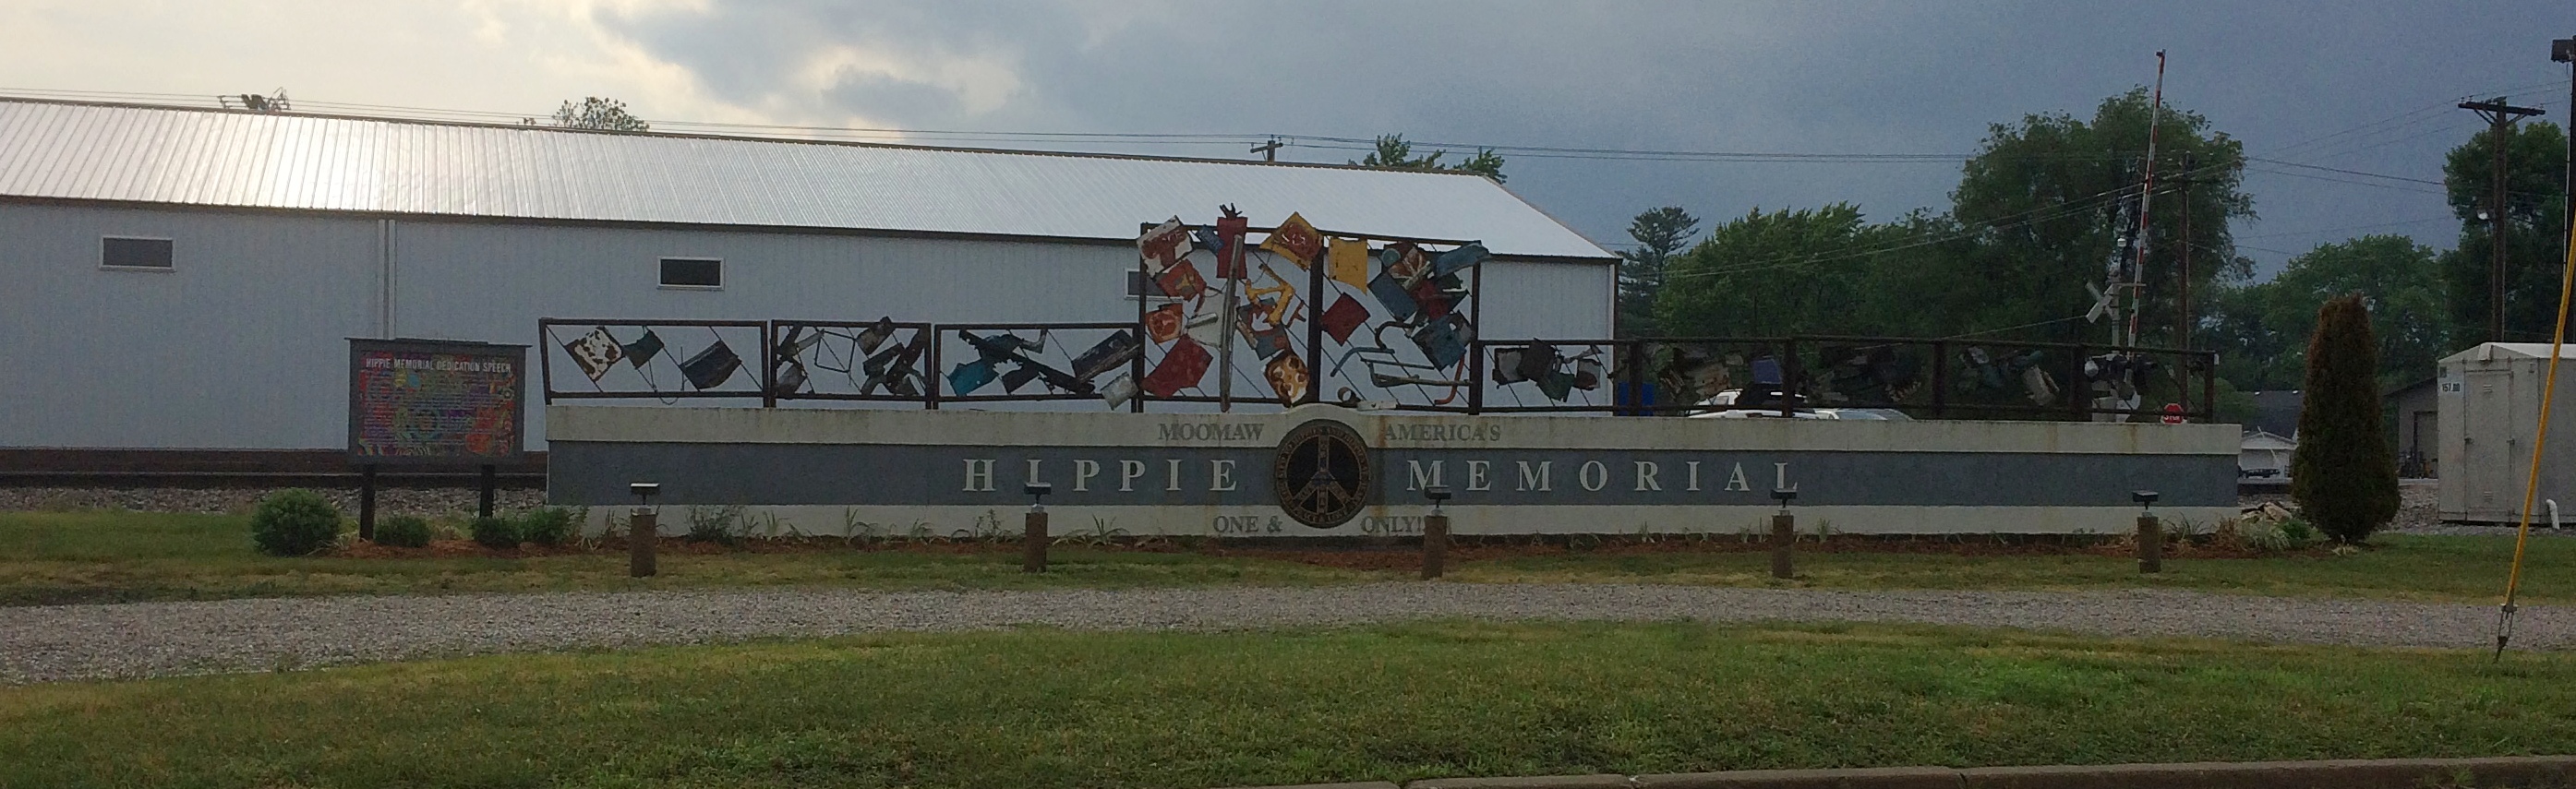 Hippie Memorial Arcola Illinois